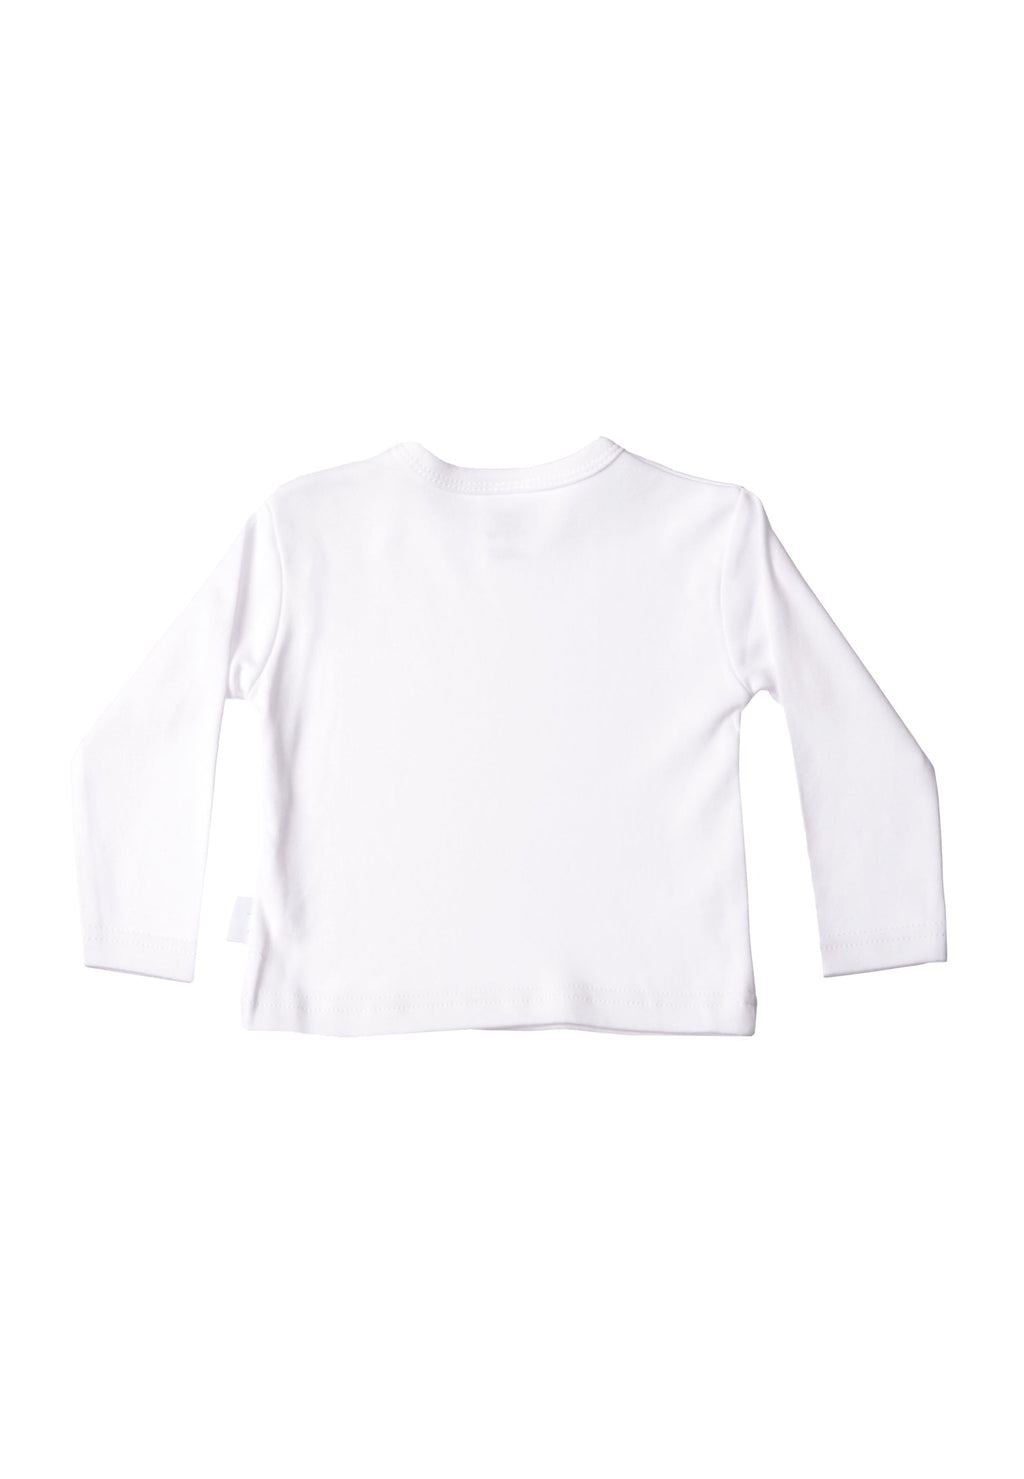 Play All Day Langarmshirt in weiß mit coolem Print für Babys und Kleinkinder.